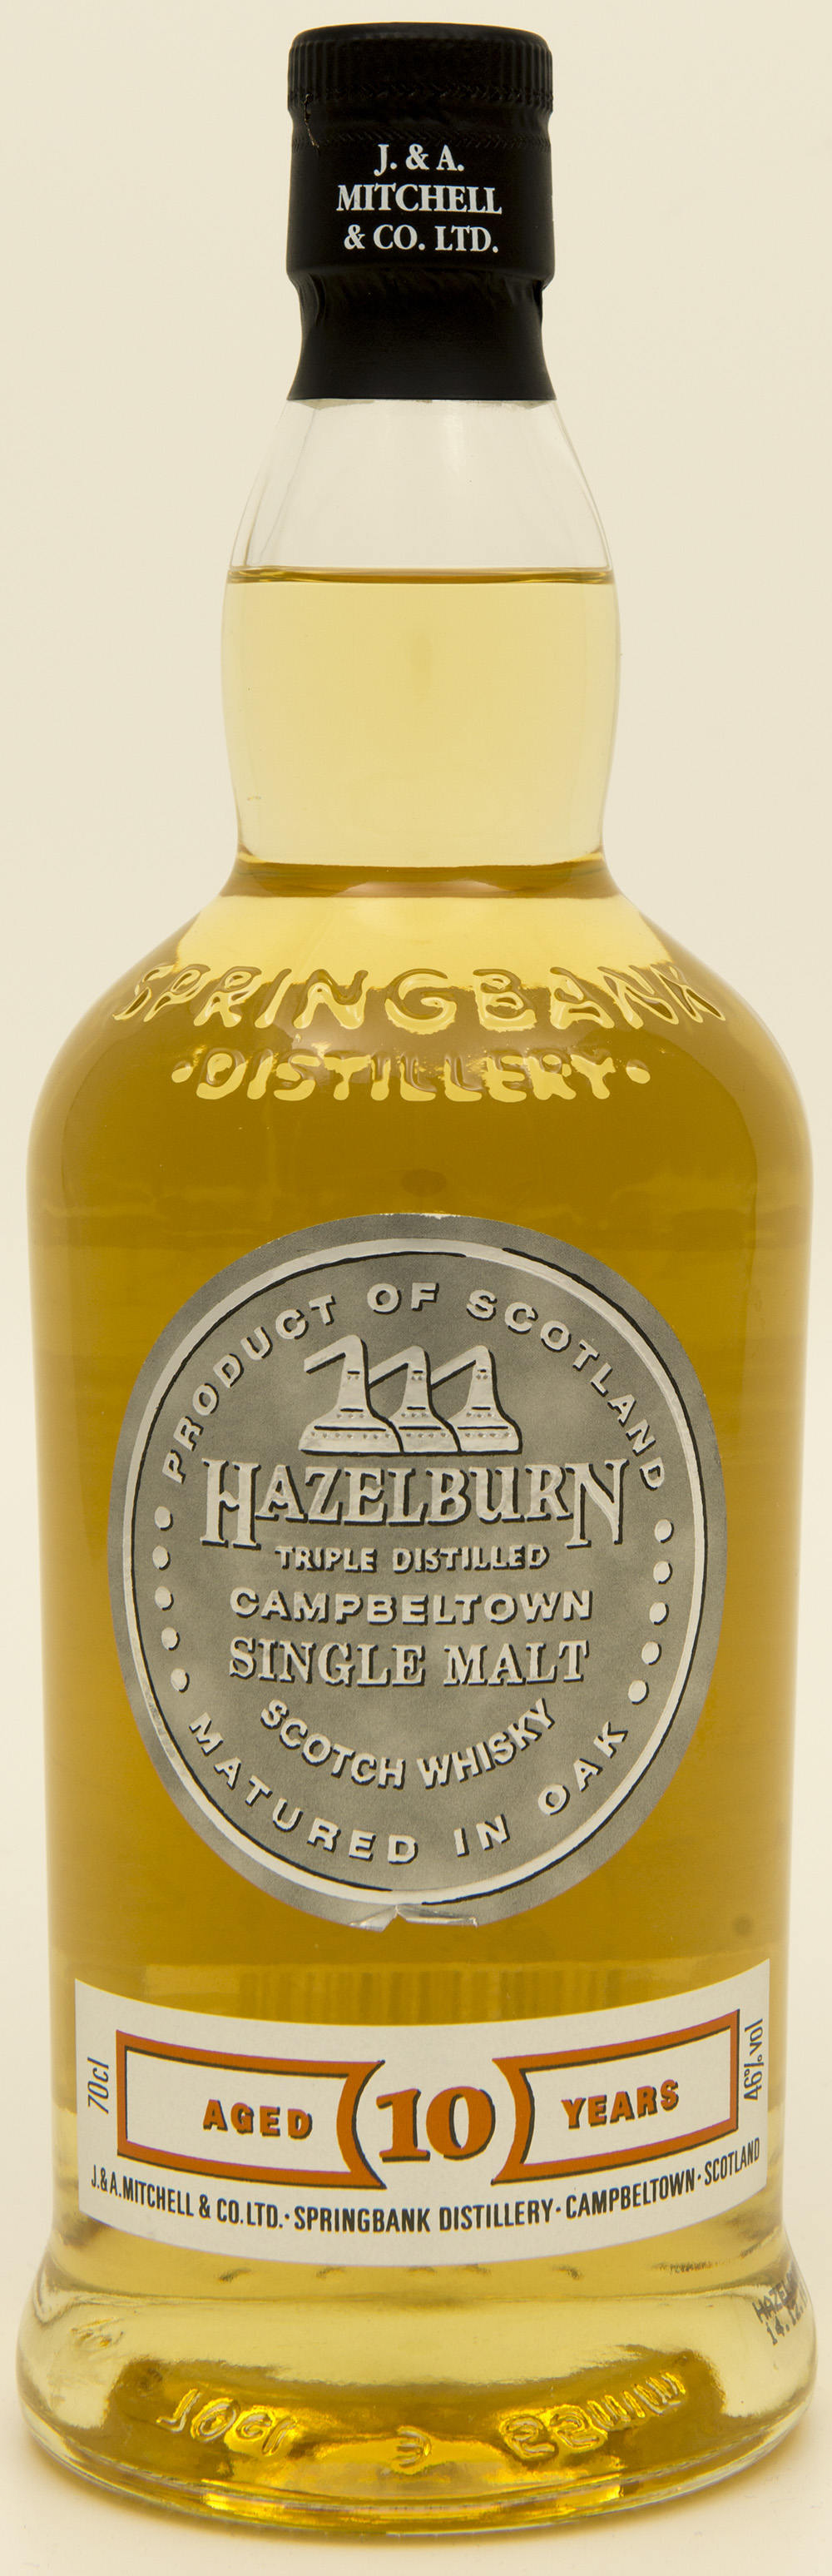 Billede: DSC_1305 - Hazelburn 10 - bottle front.jpg